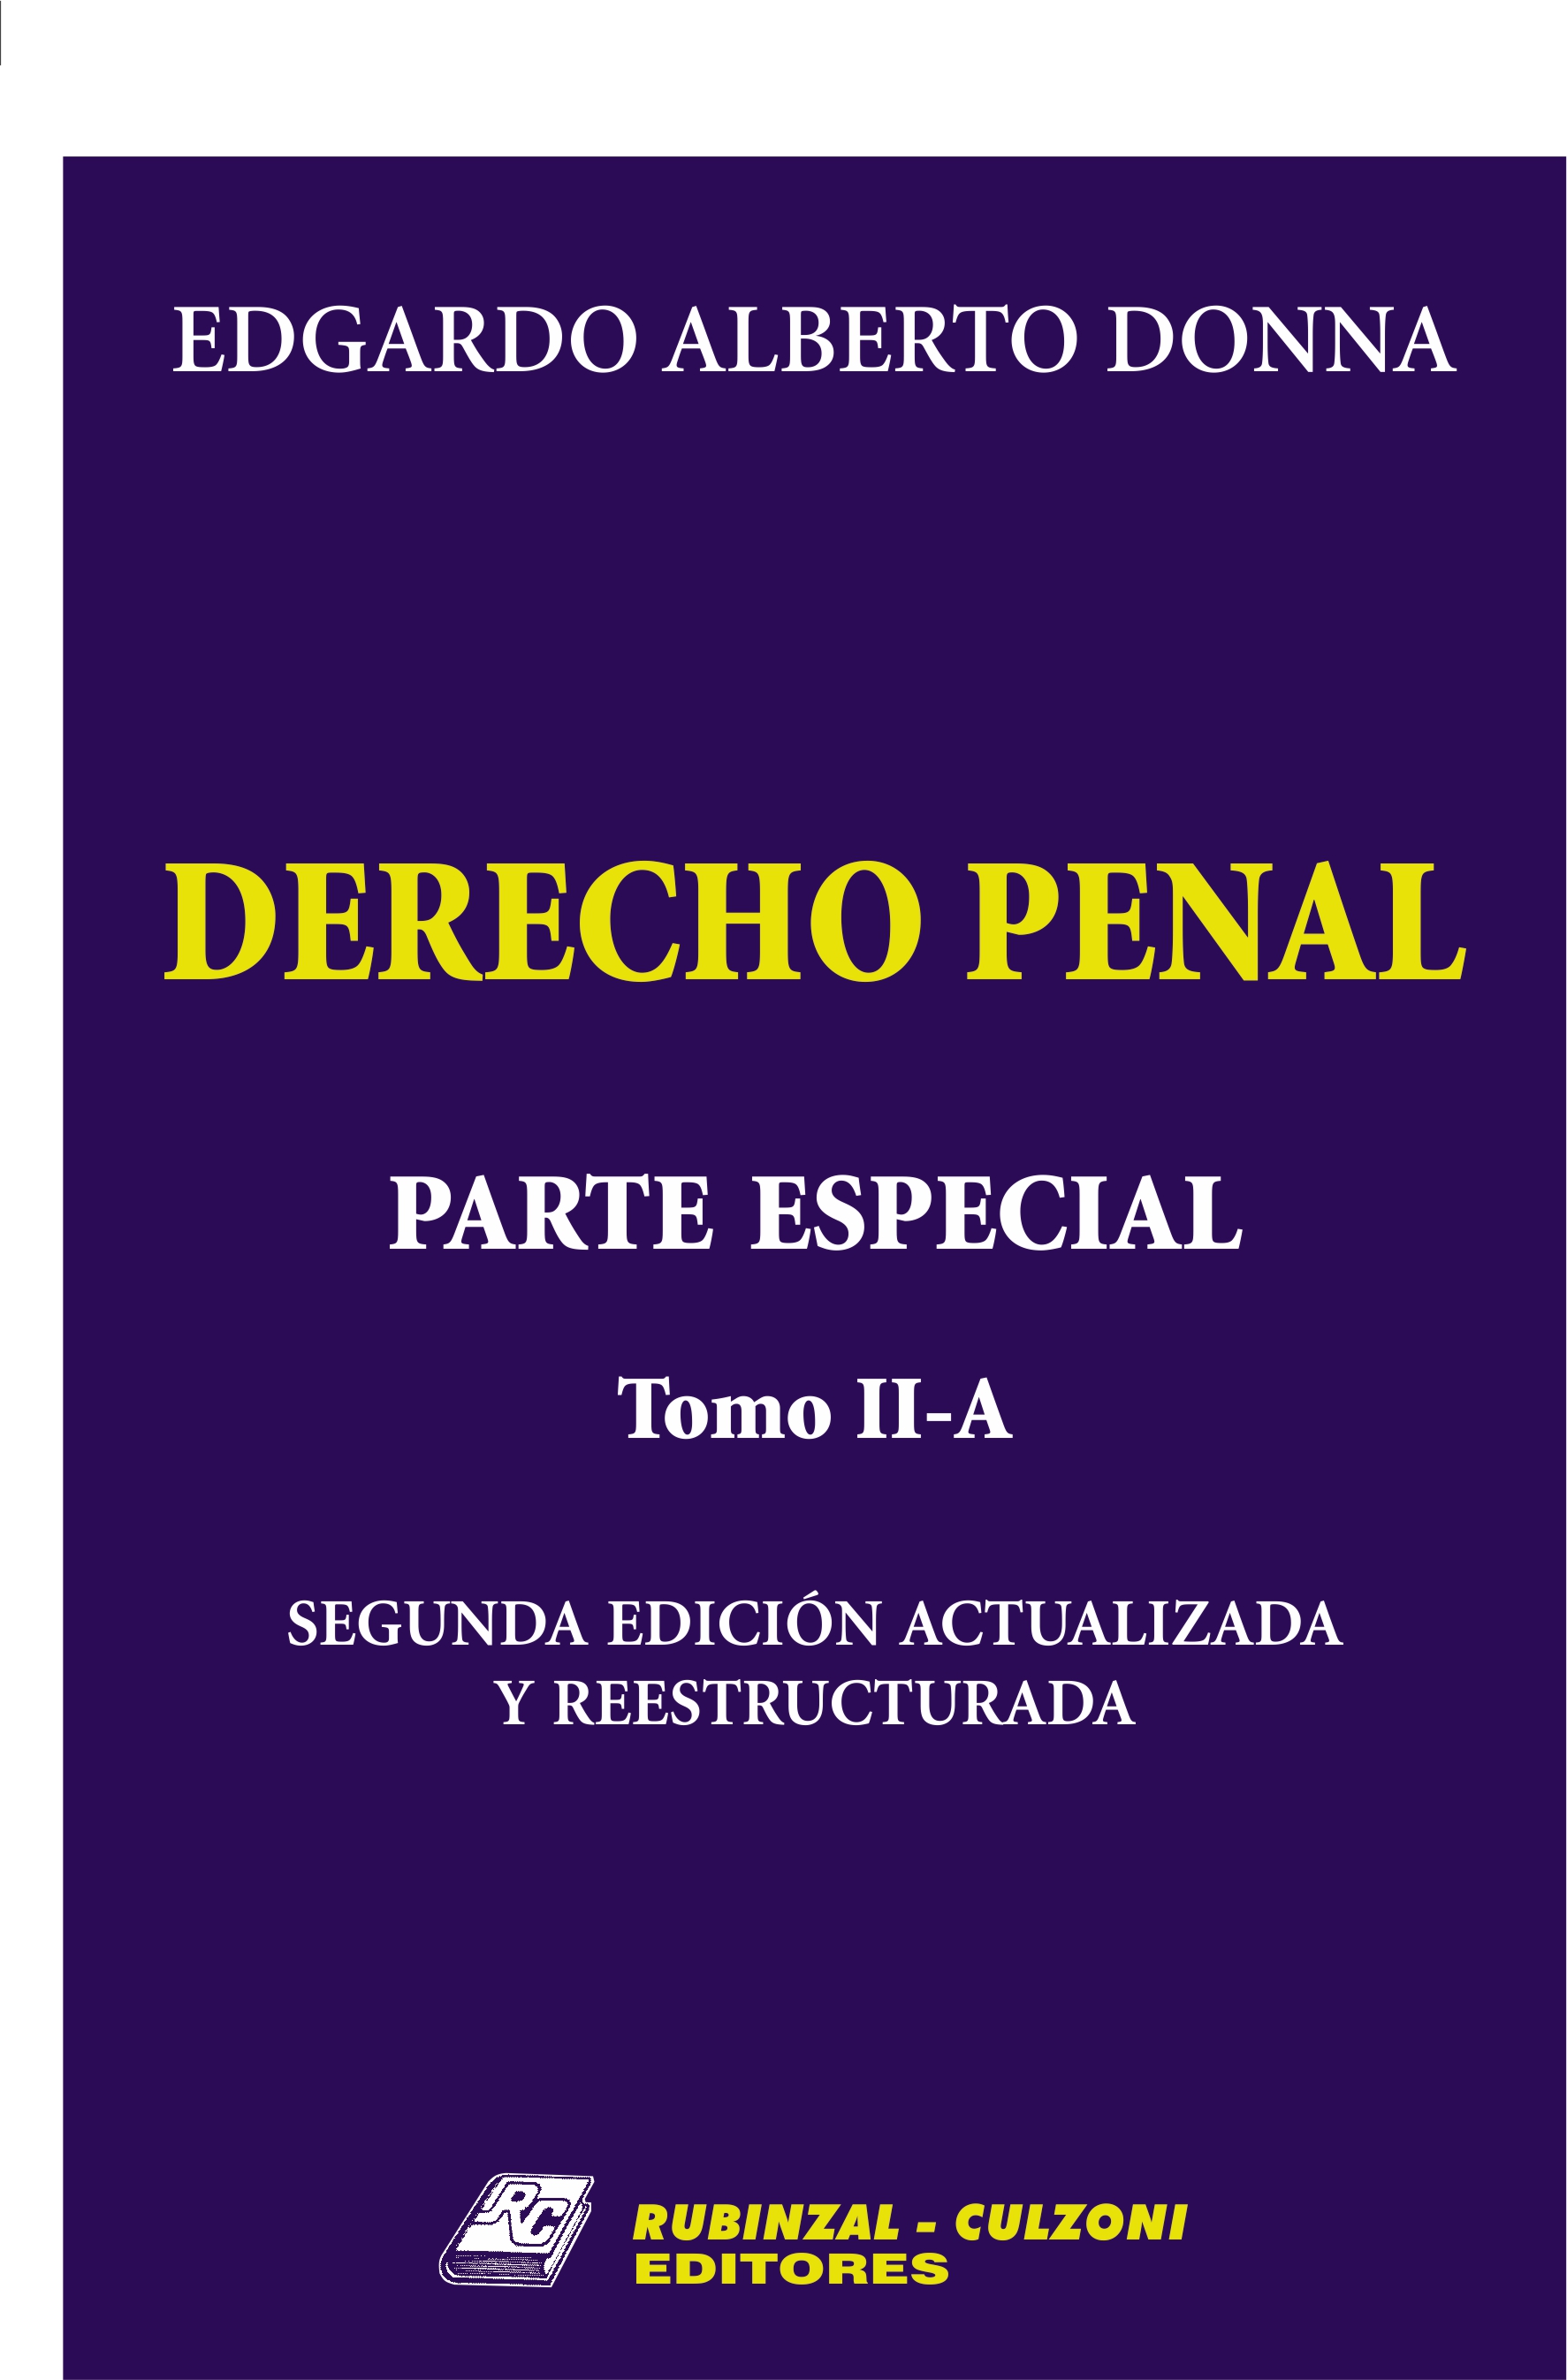 Derecho Penal. Parte Especial. - Tomo II-A. 2ª Edición actualizada y reestructurada.